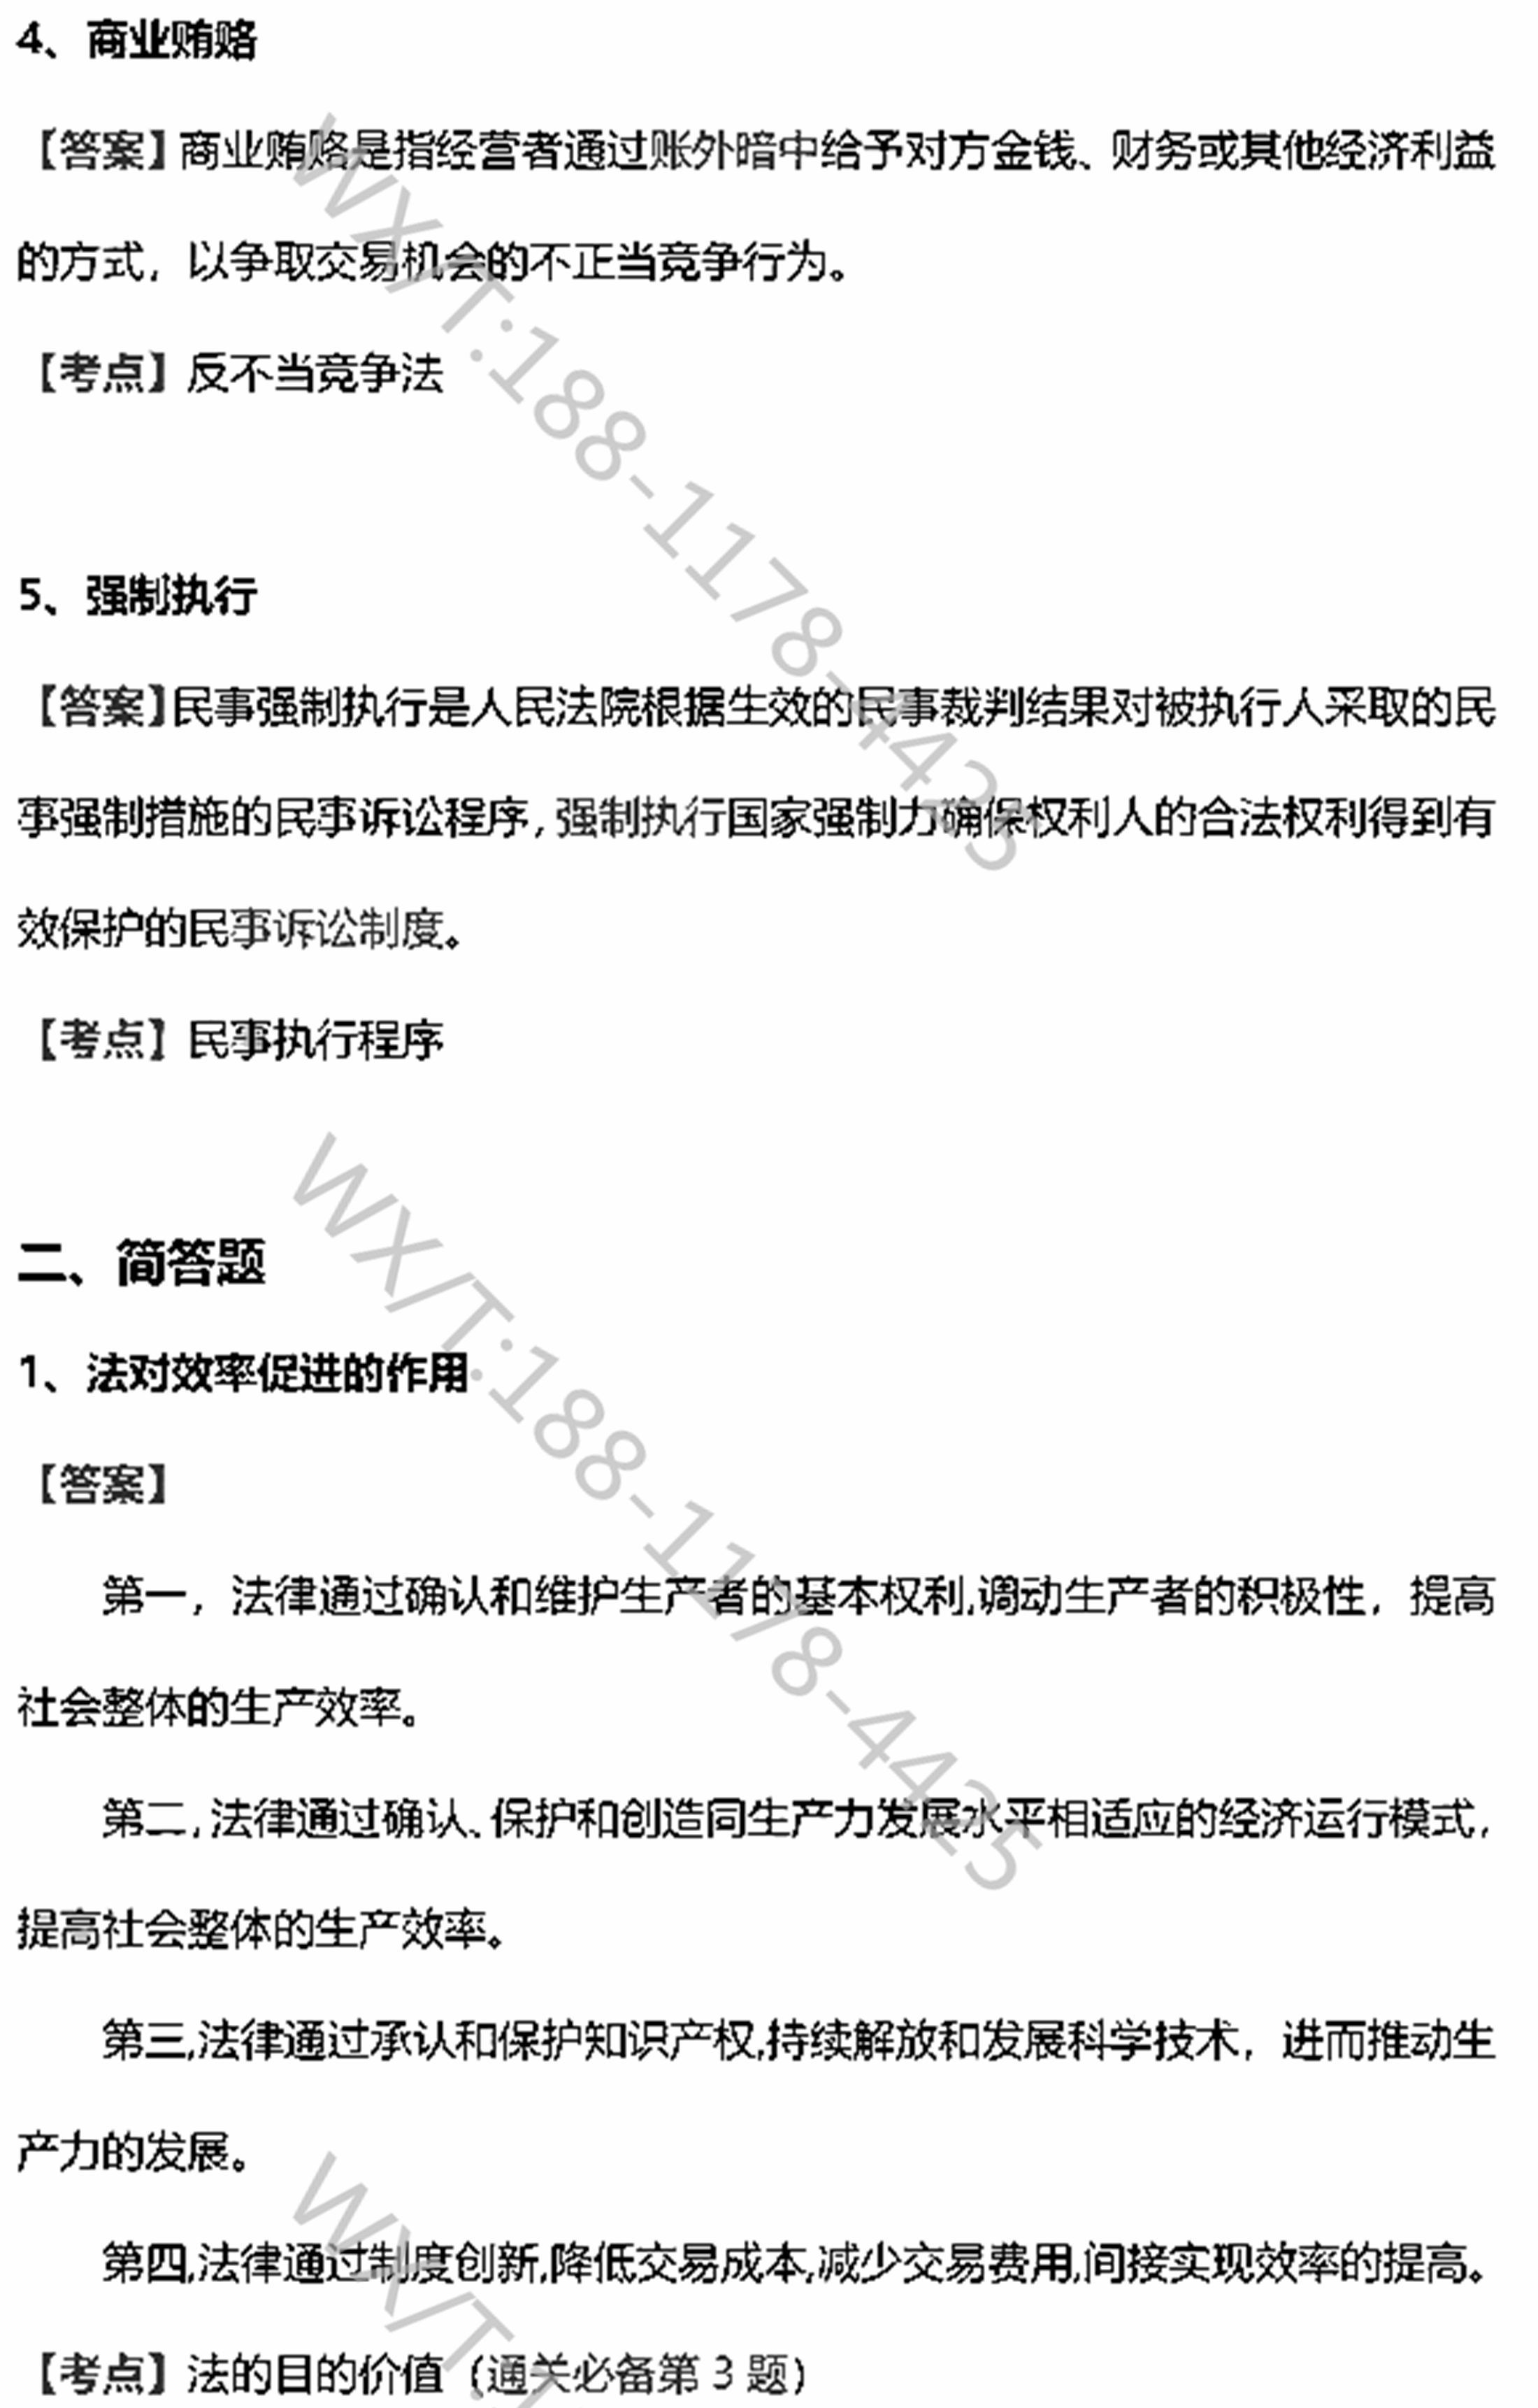 贵州省2019年04月自学考试00040法学概论真题及答案